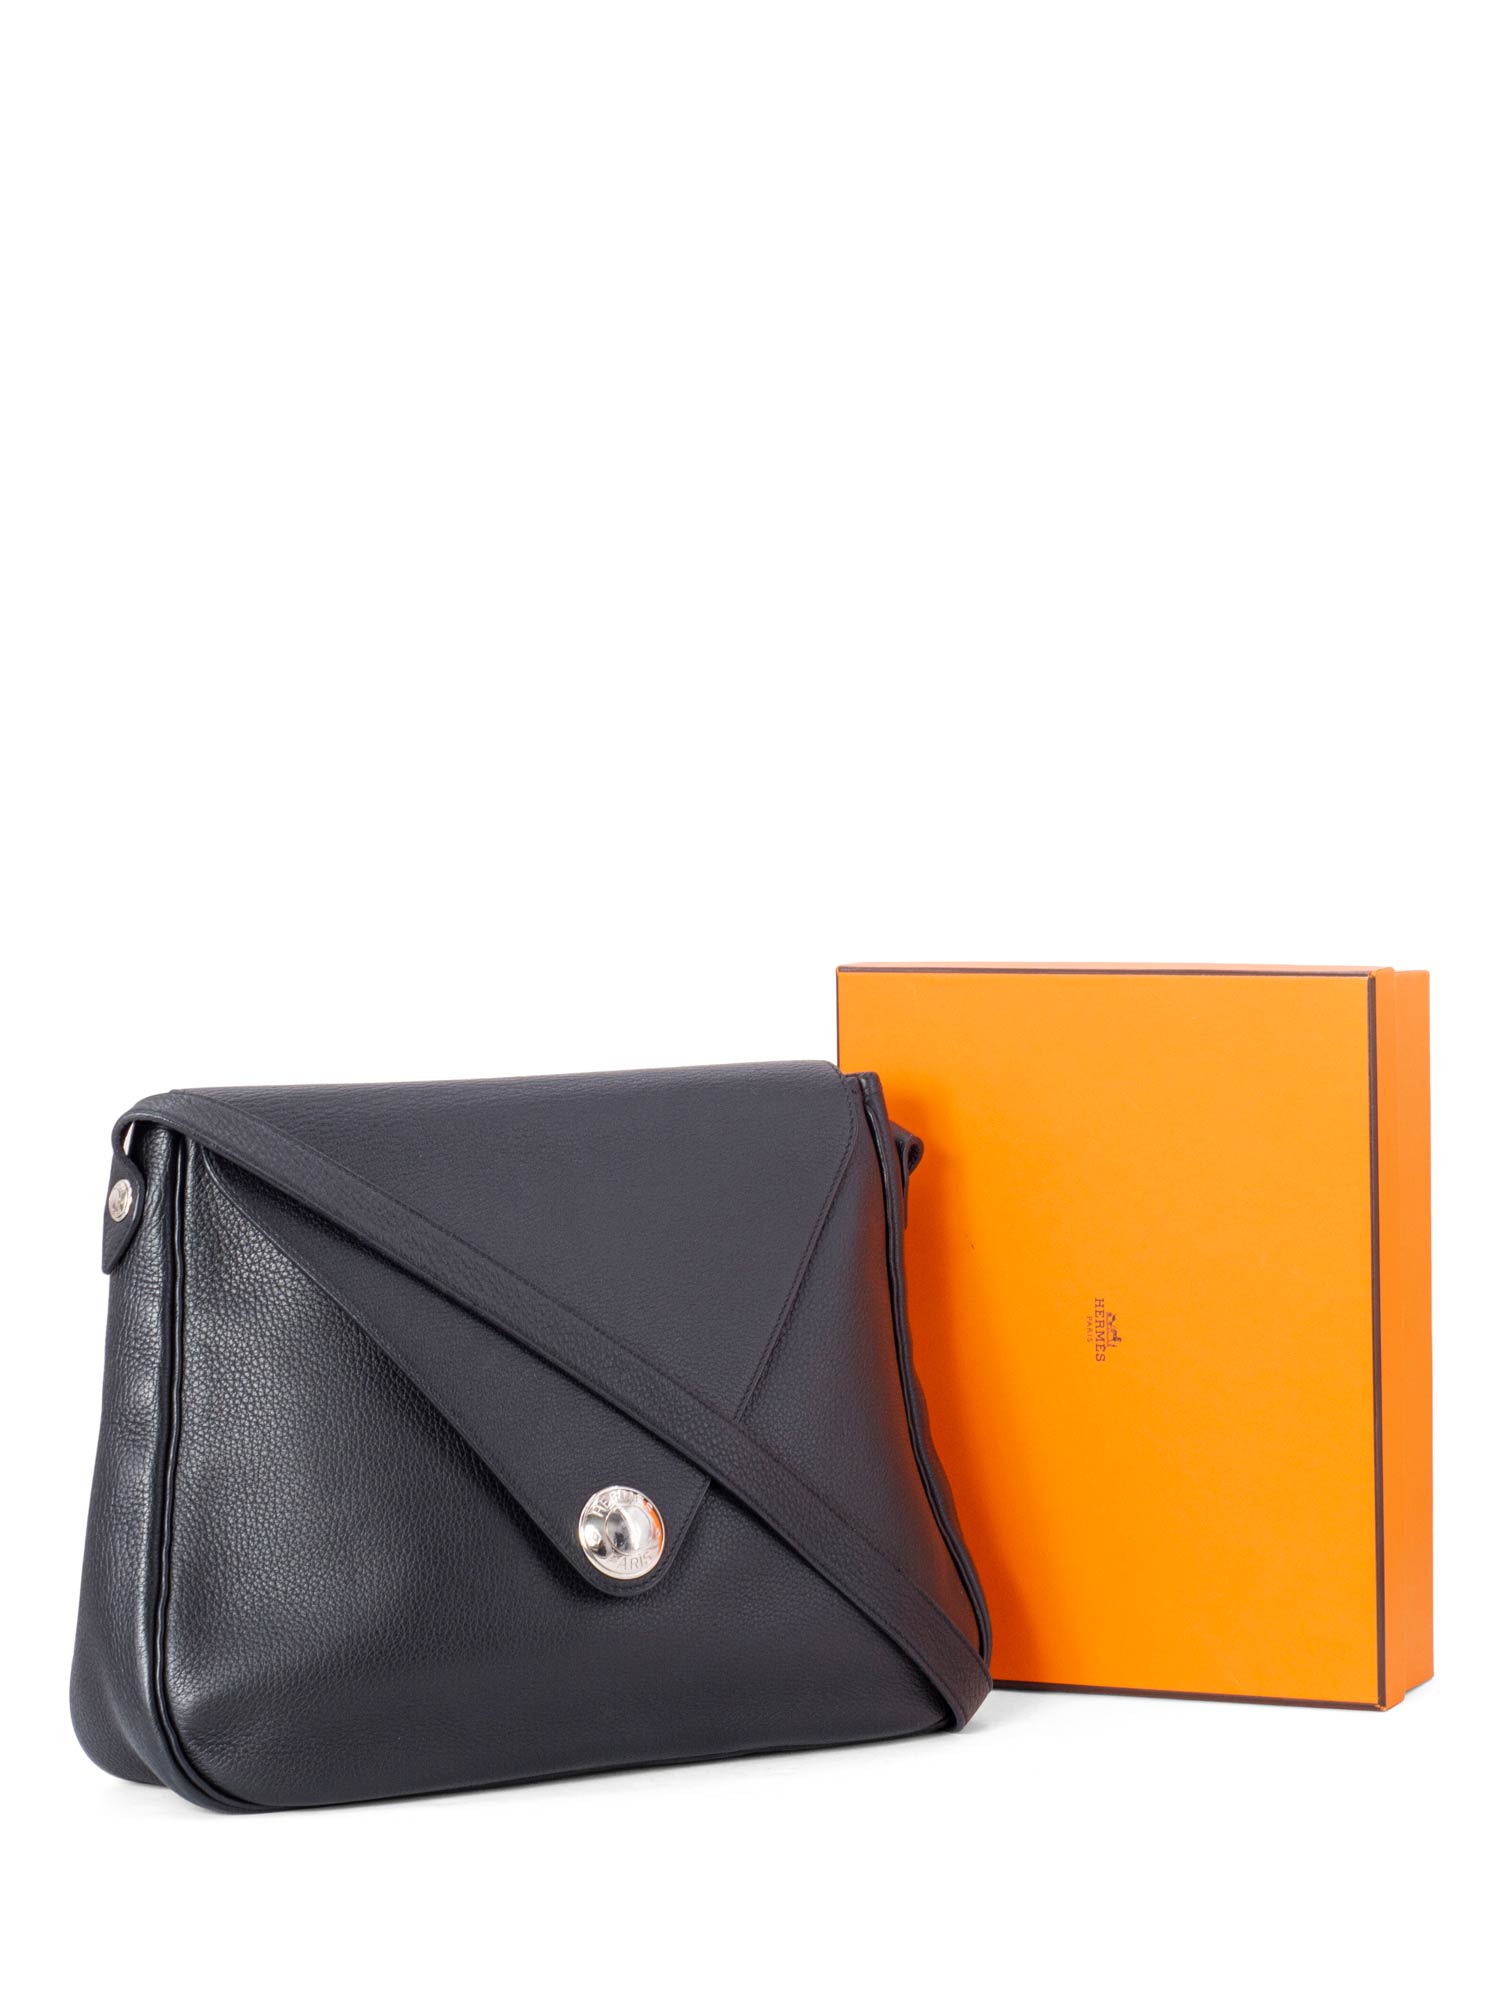 Hermes Togo Leather Large Christine Shoulder Bag Black-designer resale